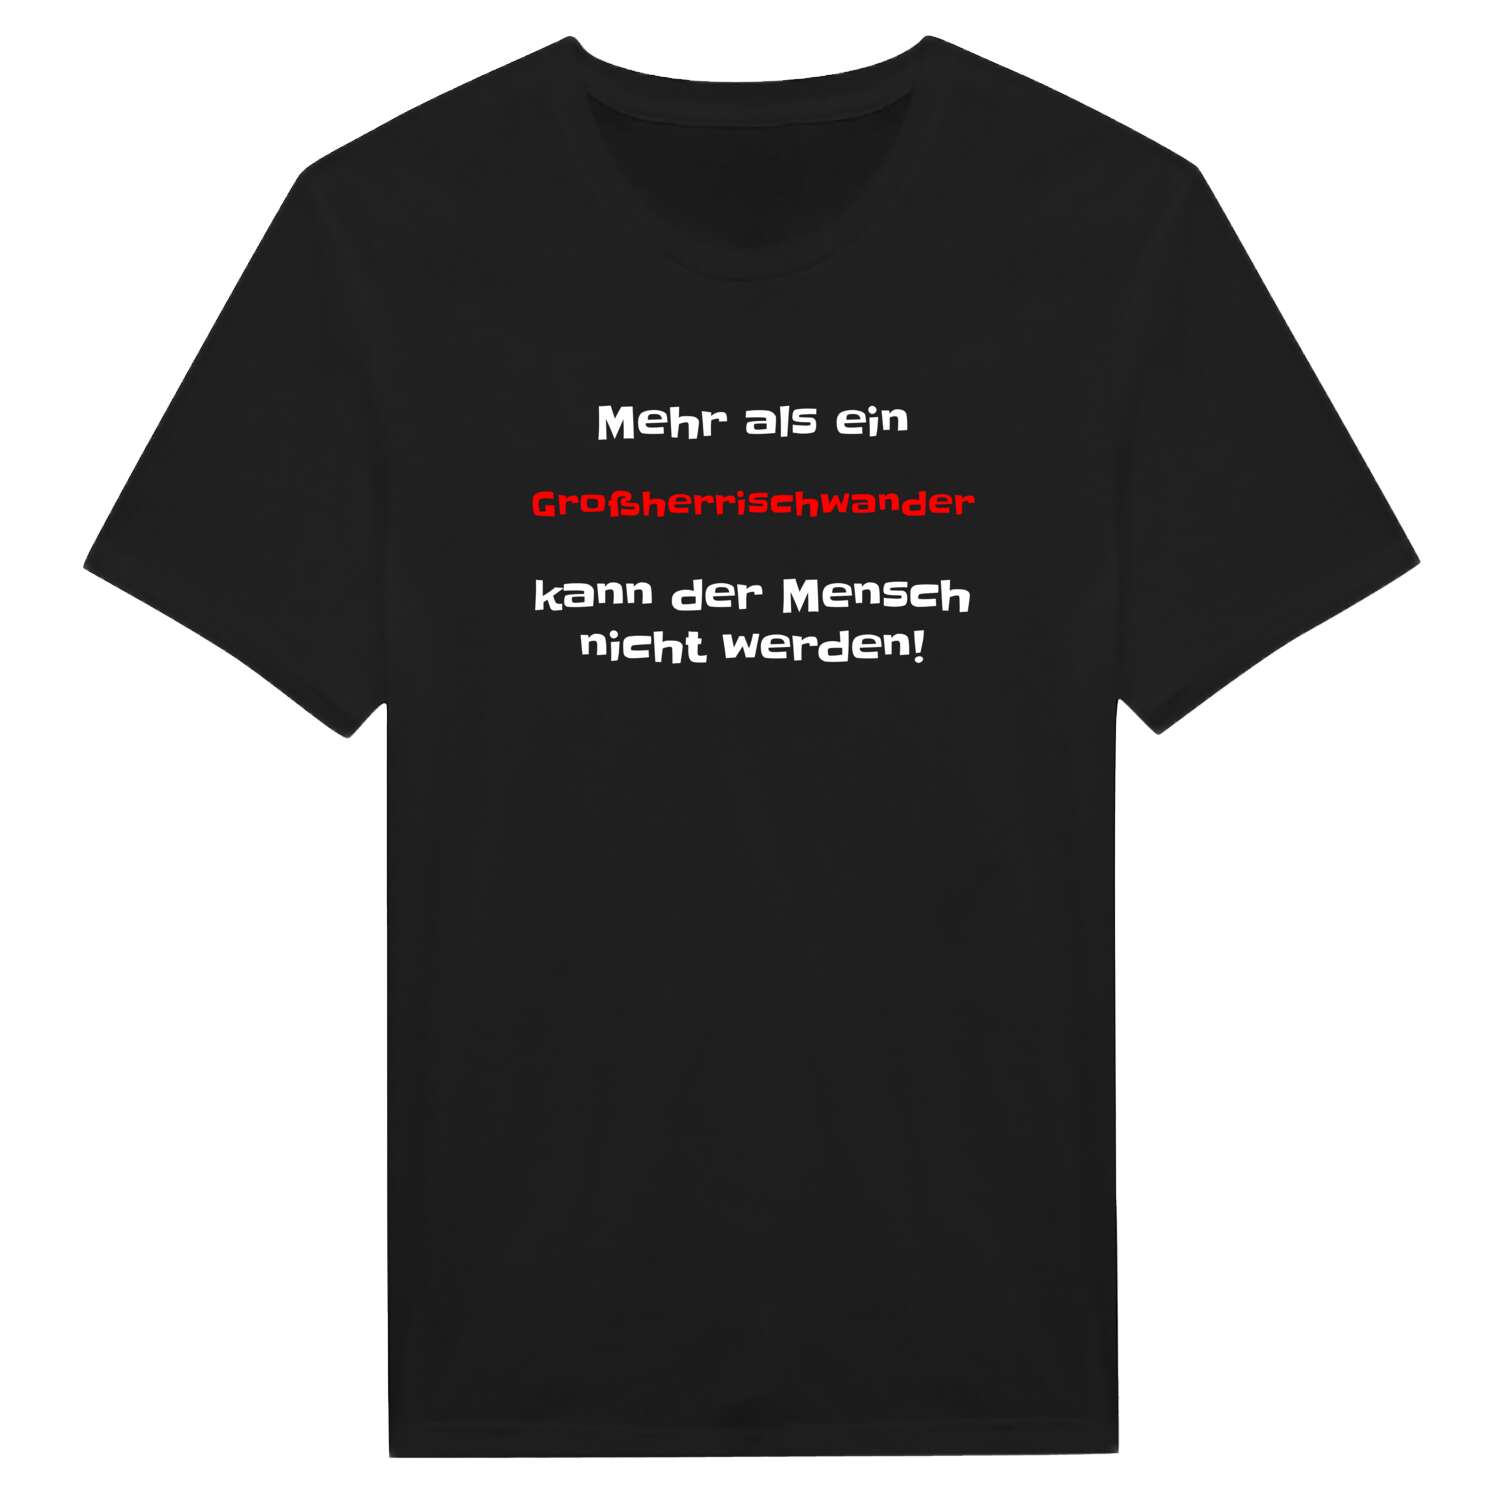 Großherrischwand T-Shirt »Mehr als ein«